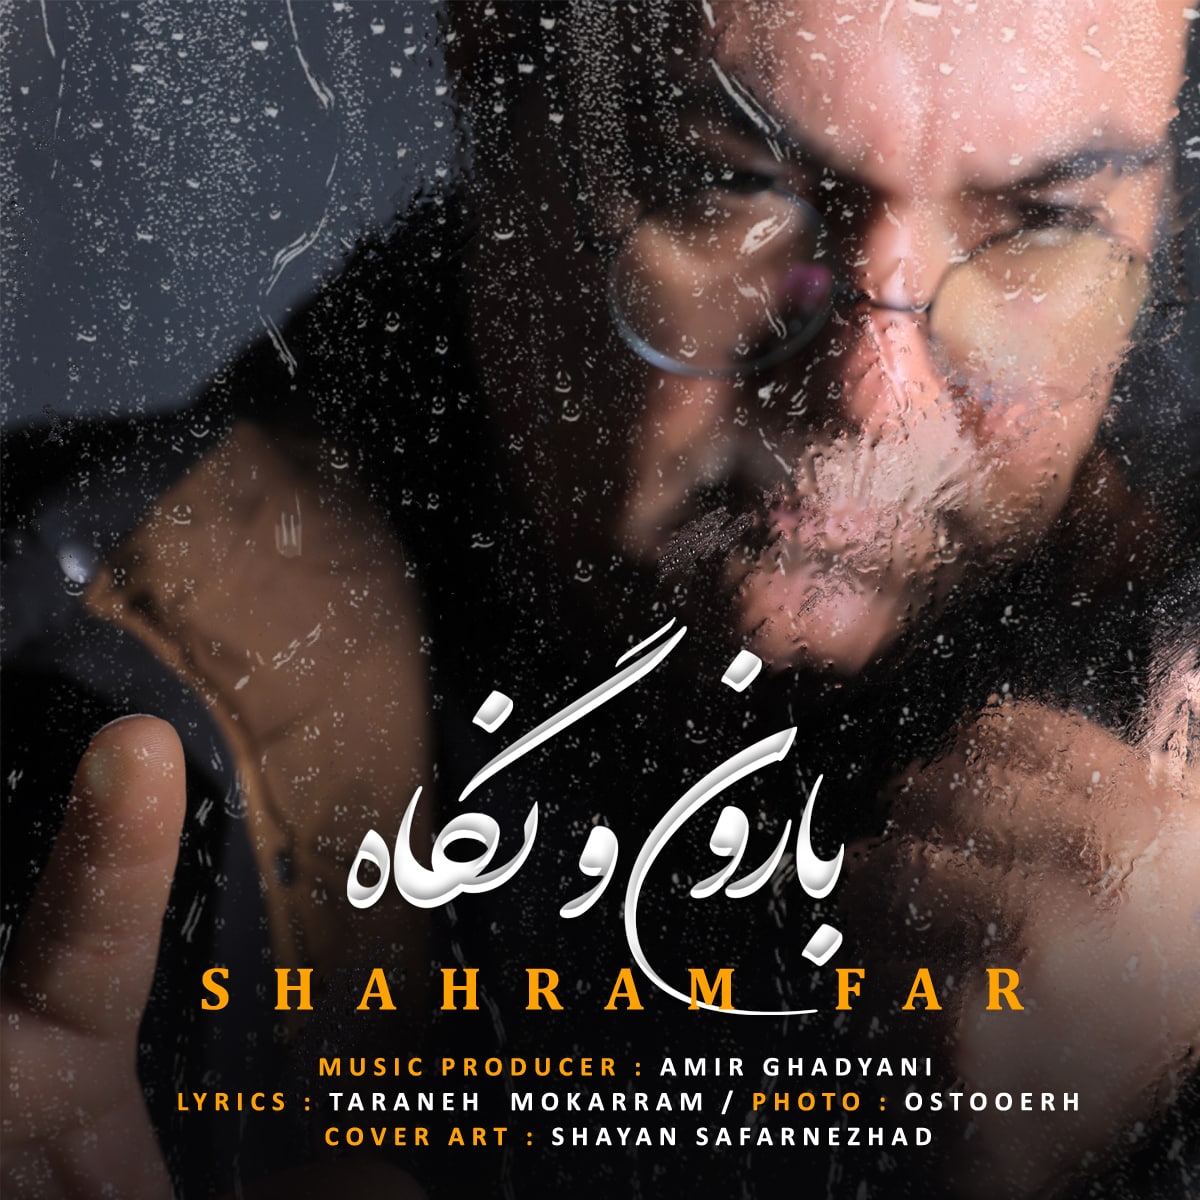 Shahram Far – Baroono Negah